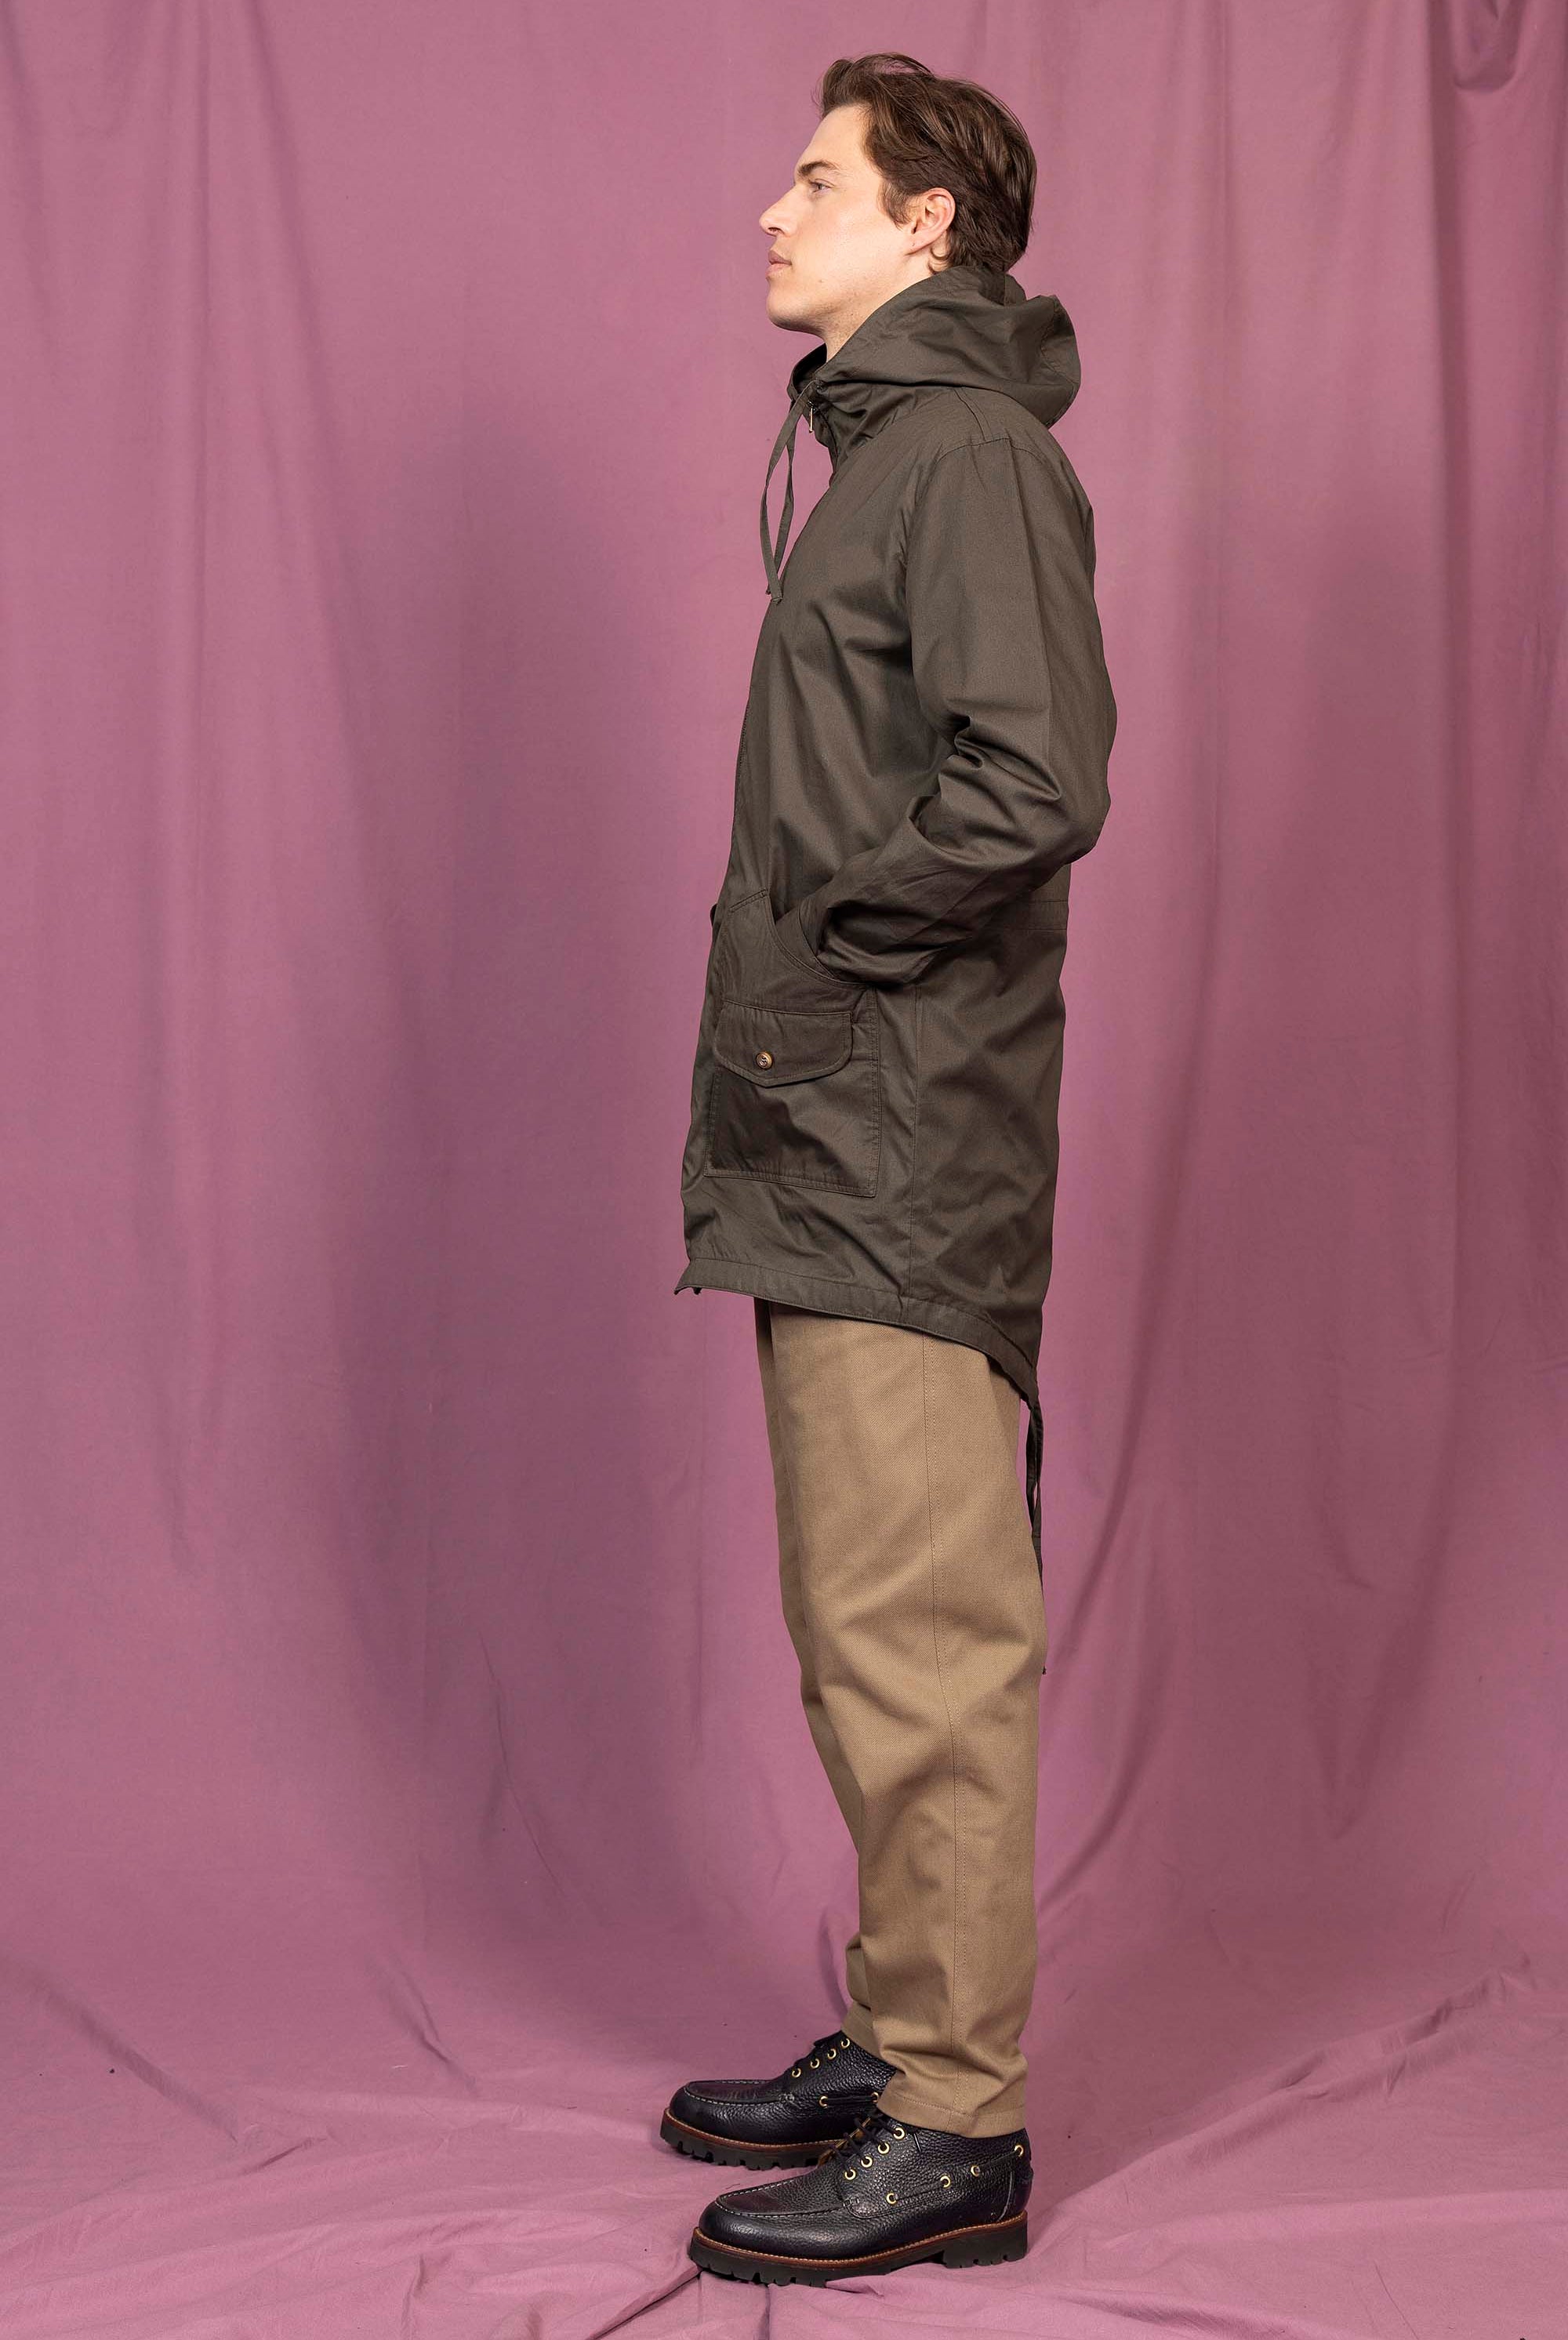 Manteau Ivan Kaki Foncé outerwear résistant et authentique avec une finition impeccable